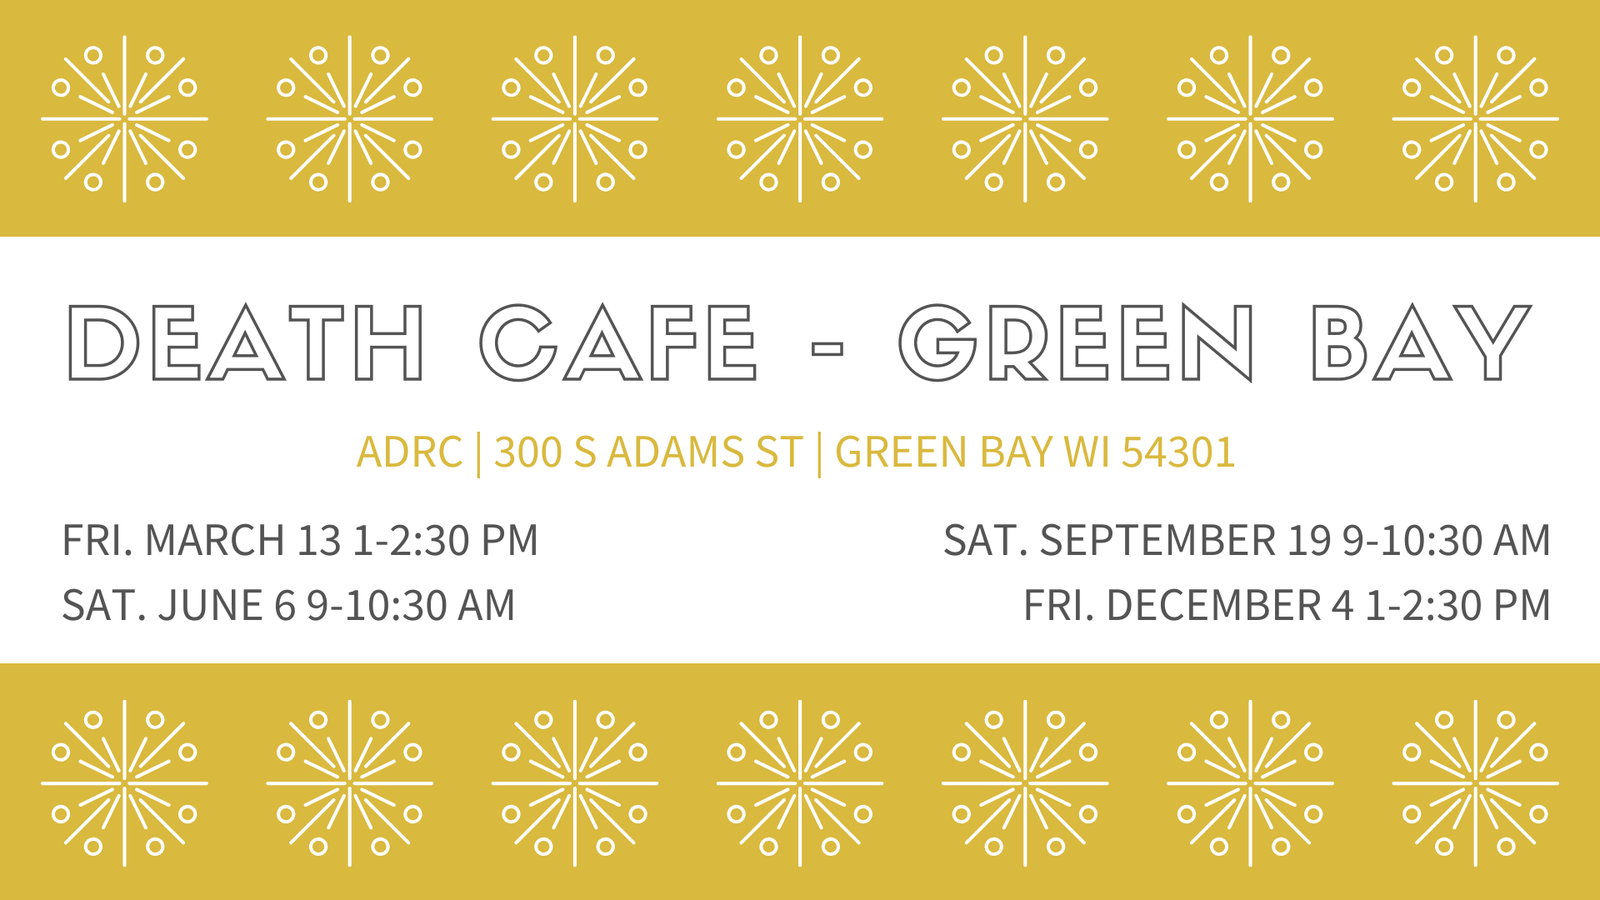 Death Cafe Green Bay Dec 4 2020